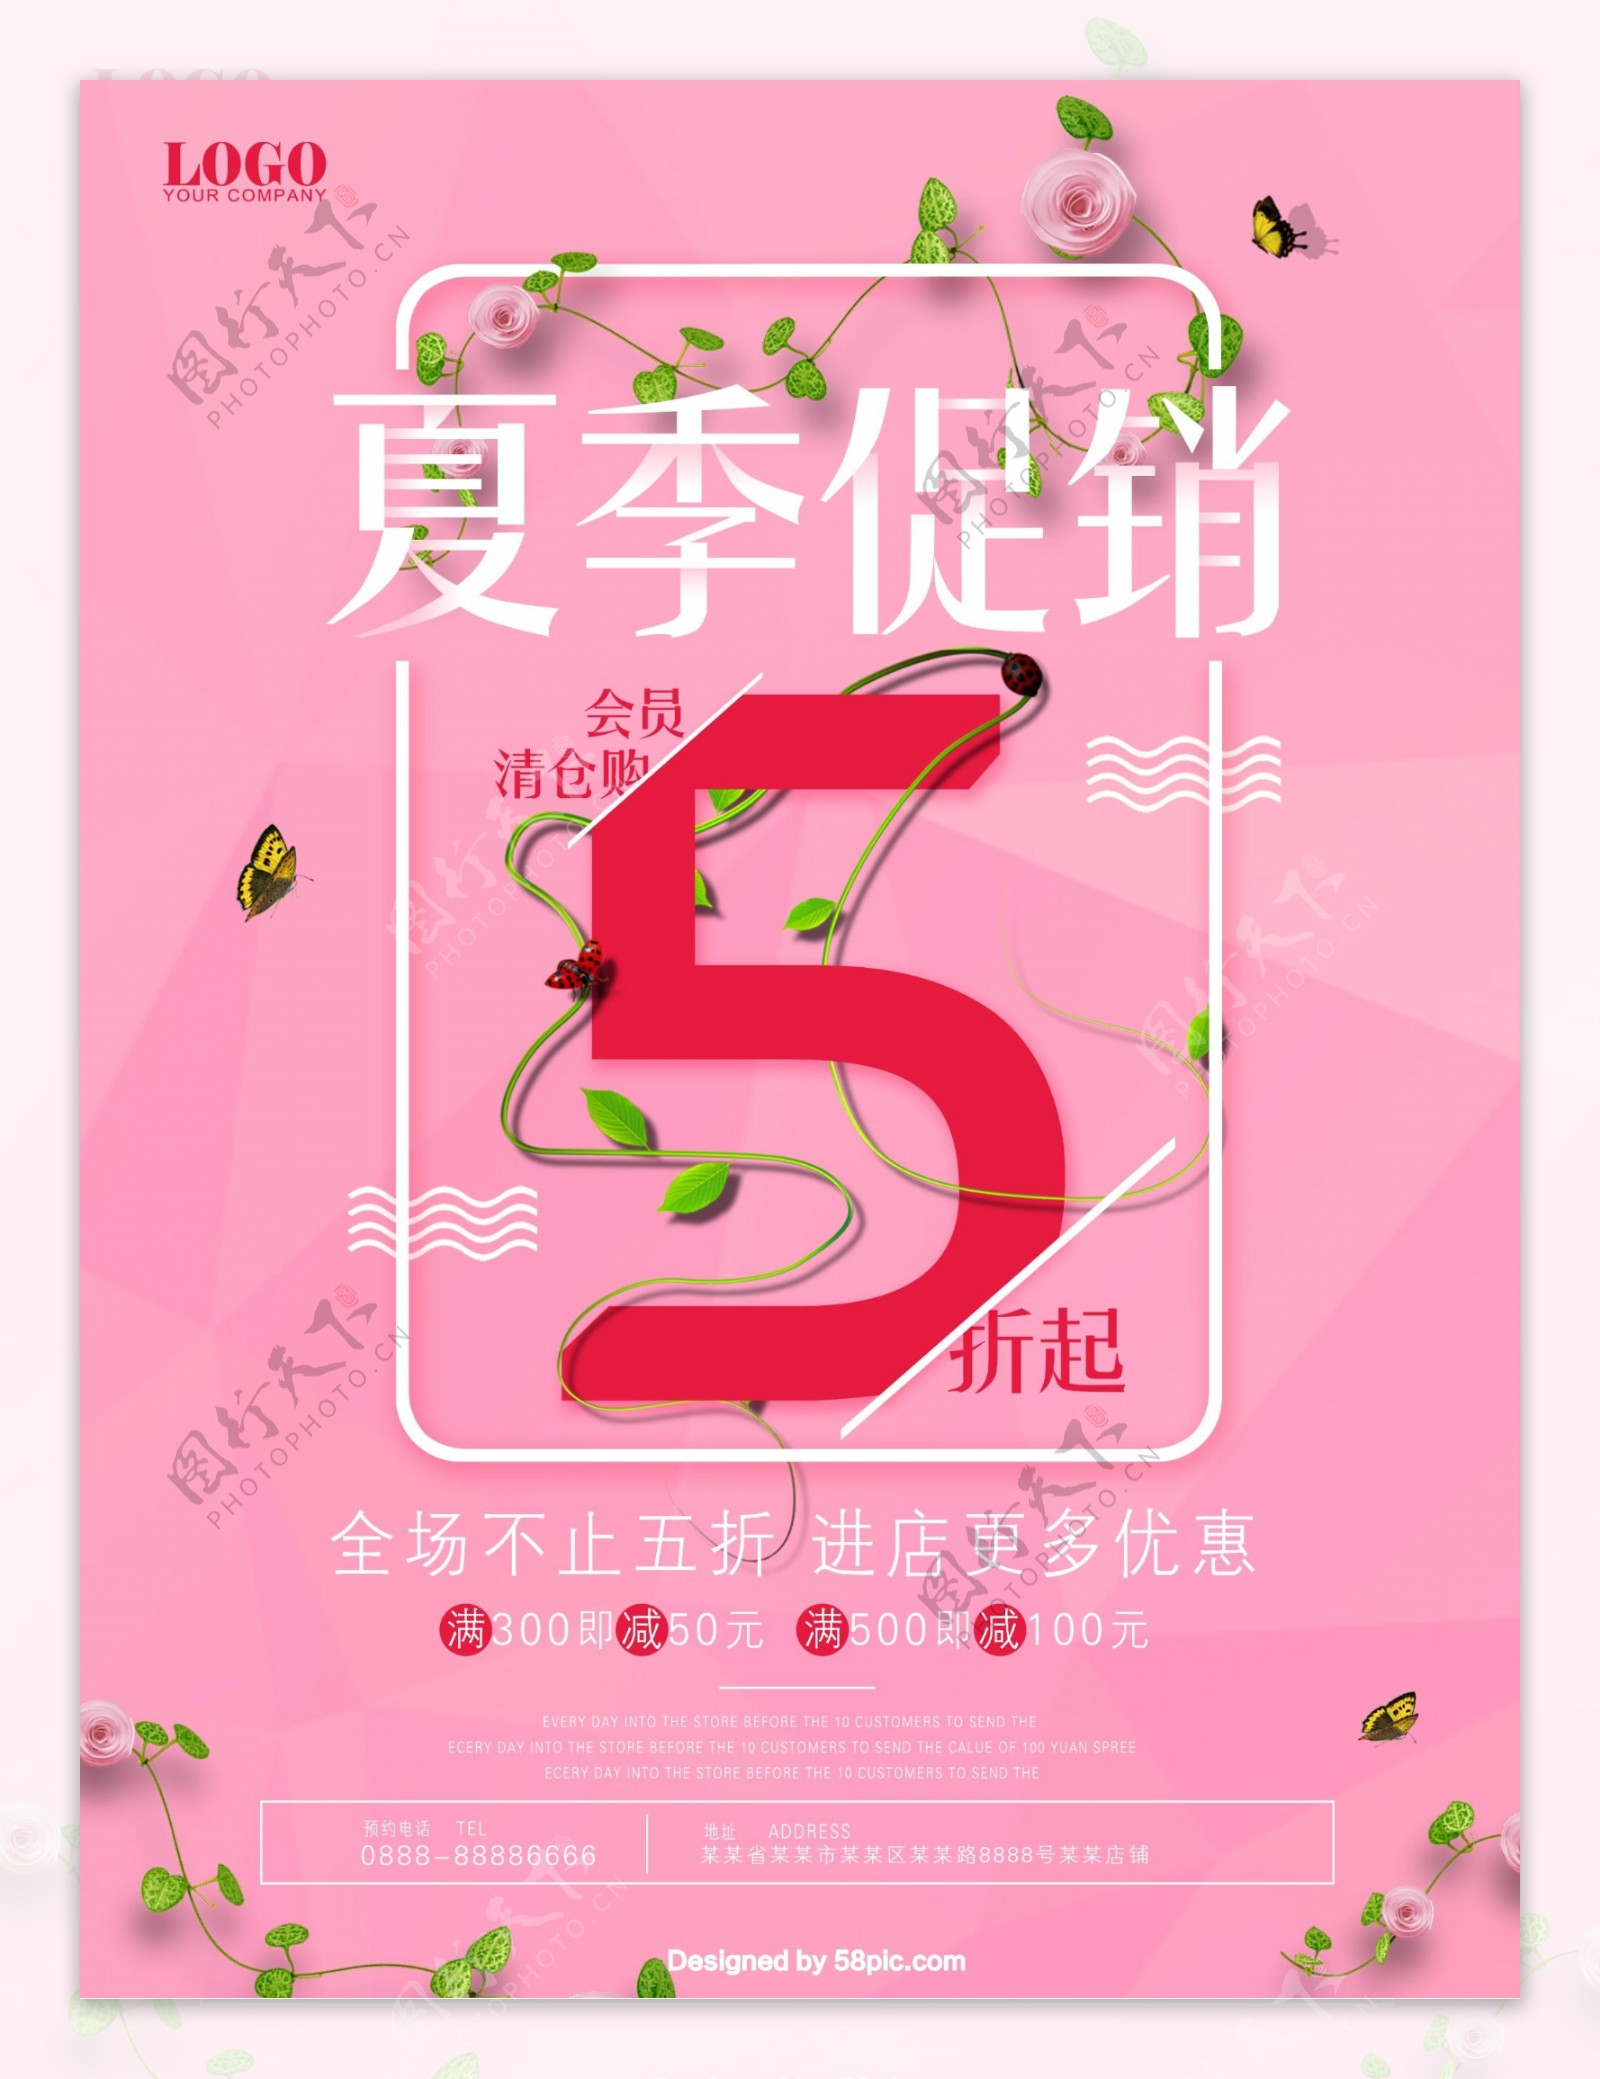 大气粉色夏季5折清仓商场商店促销海报PSD模板设计